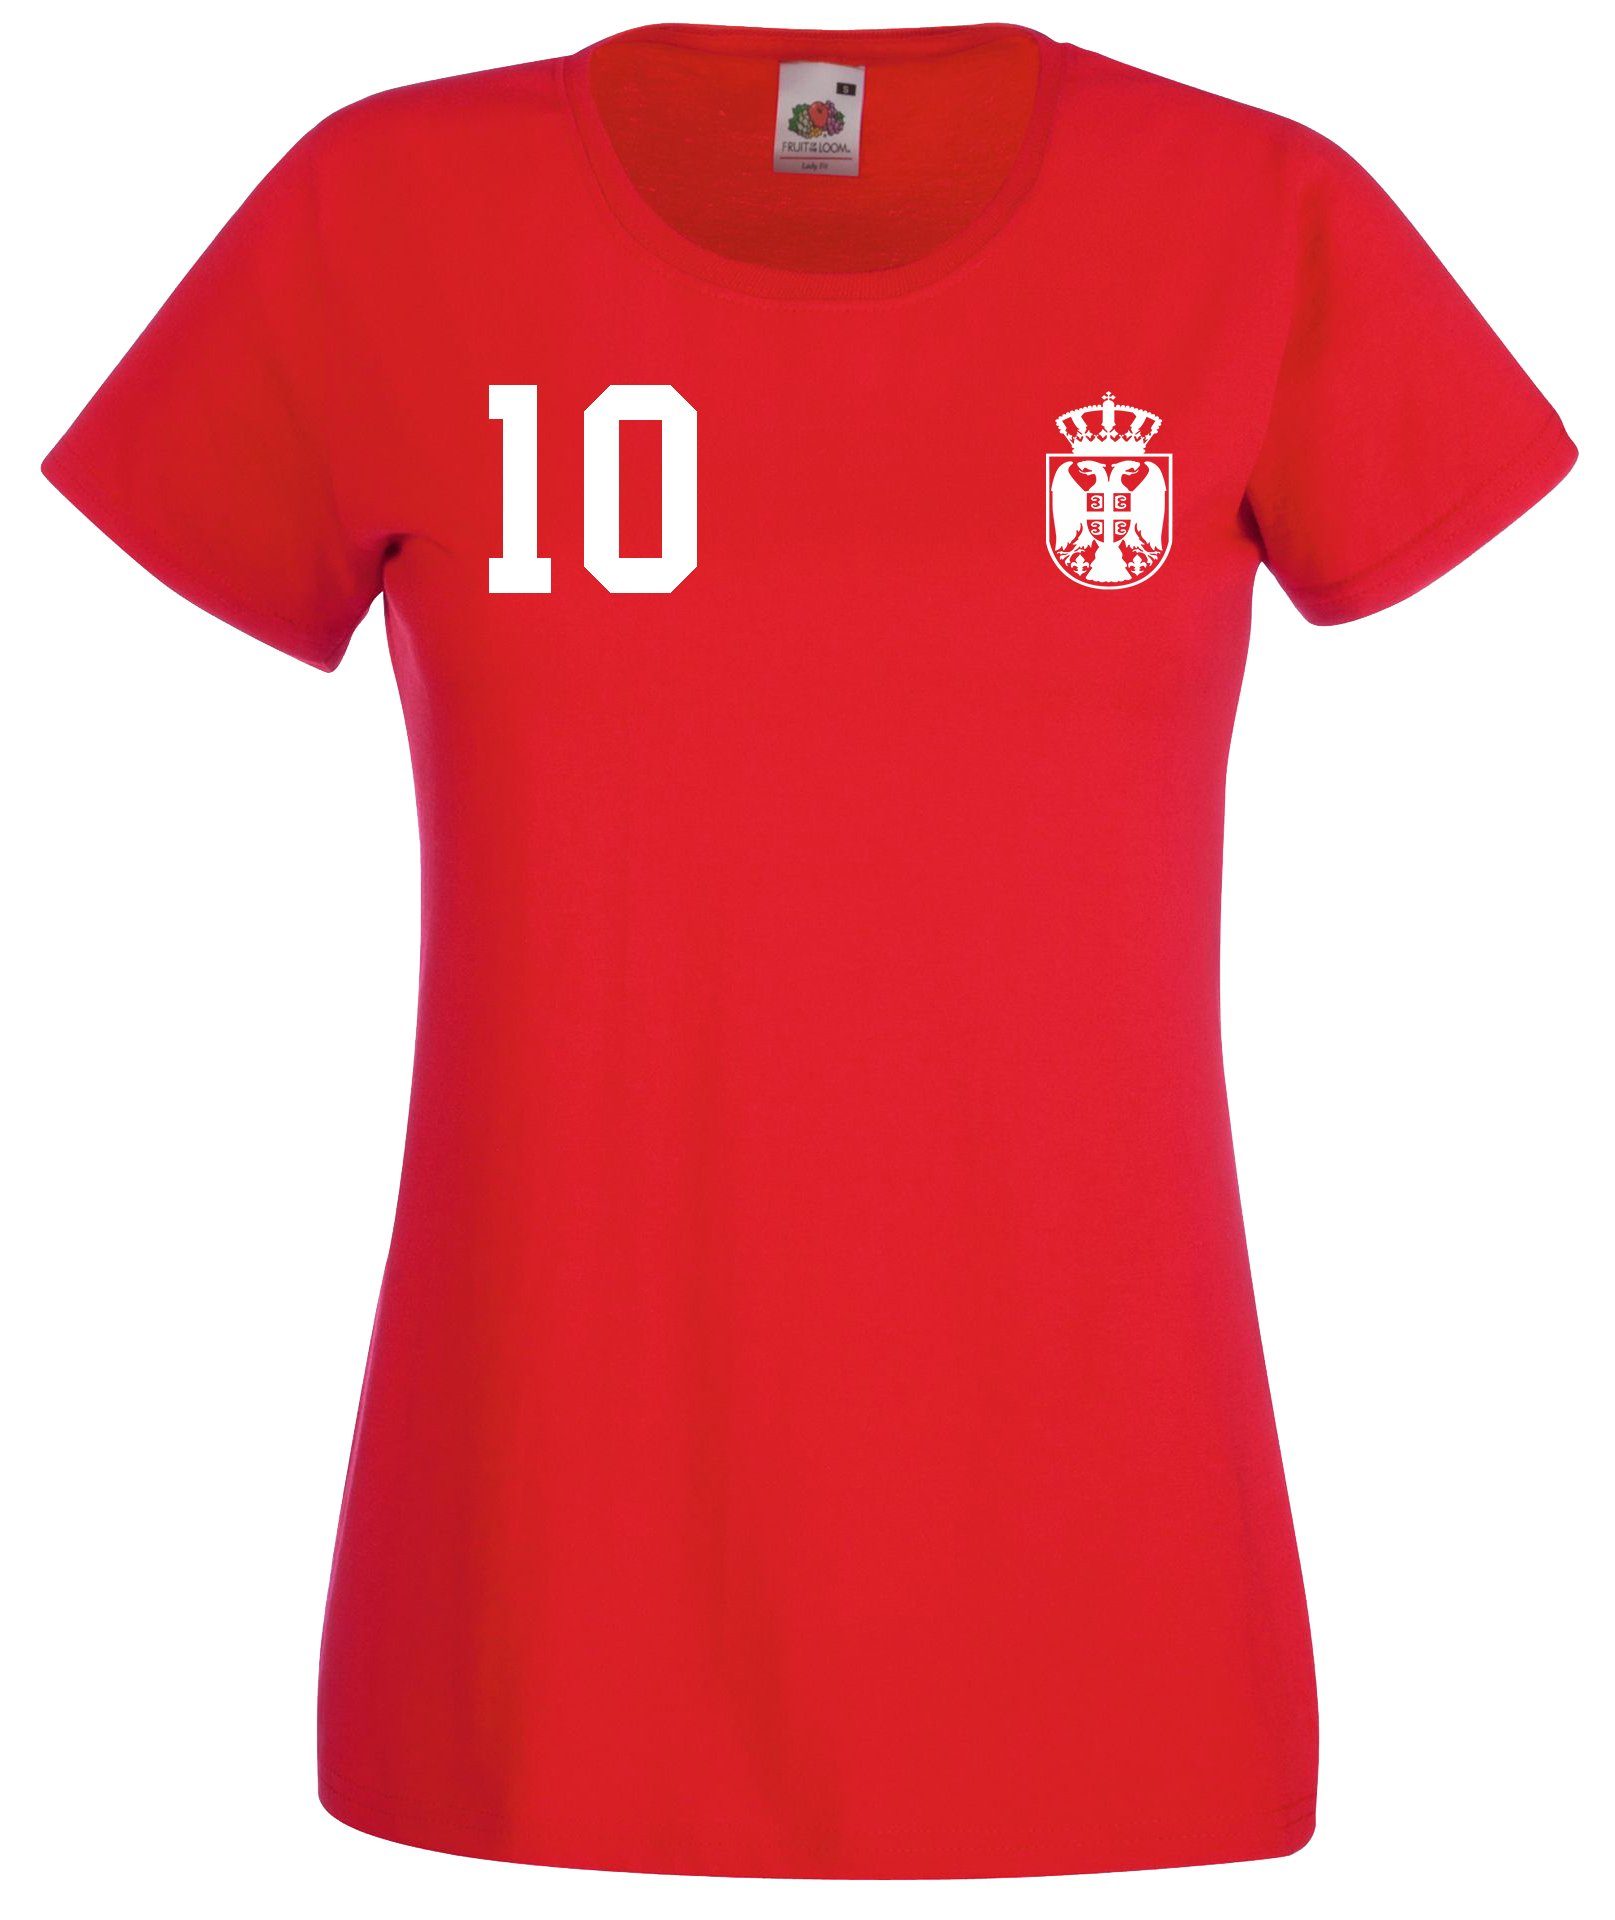 Damen Shirts Youth Designz T-Shirt Serbien Damen T-Shirt im Fußball Trikot Look mit trendigem Motiv